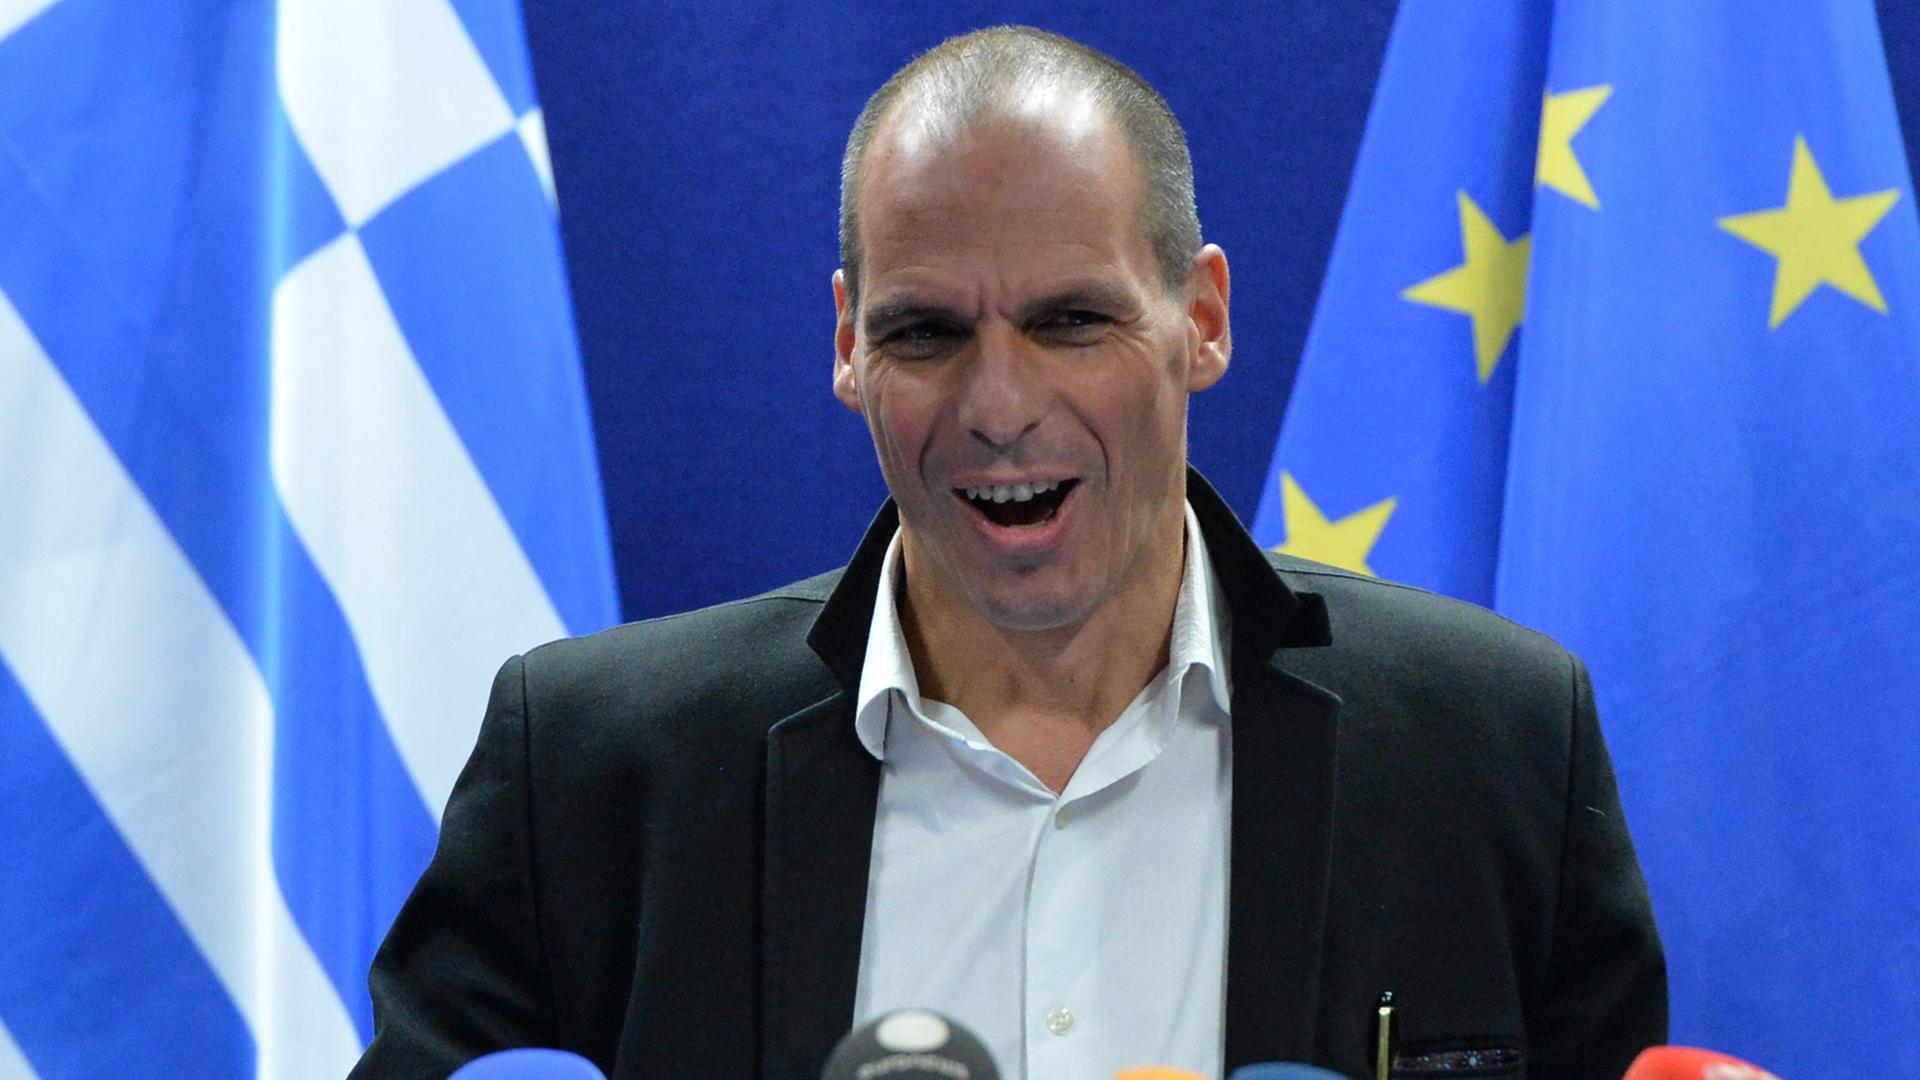 Der griechische Finanzminister Yannis Varoufakis steht hinter einigen Mikrofonen und verzerrt das Gesicht.